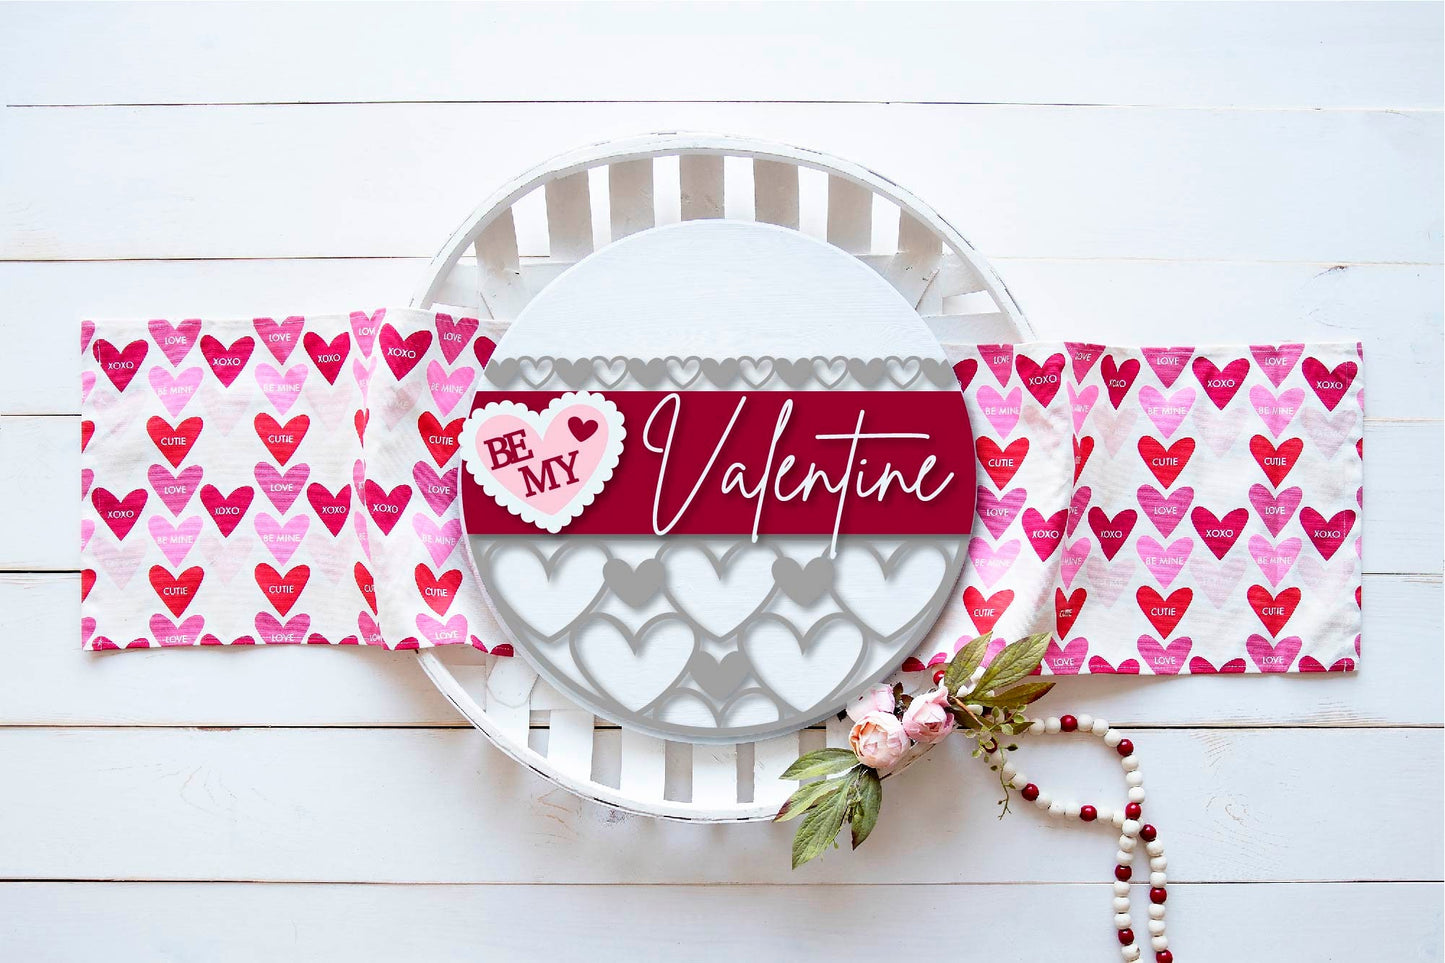 Be My Valentine SVG, Valentine door round SVG,  patterned heart Valentine door sign SVG, Valentine decor, Glowforge Svg, laser cut file